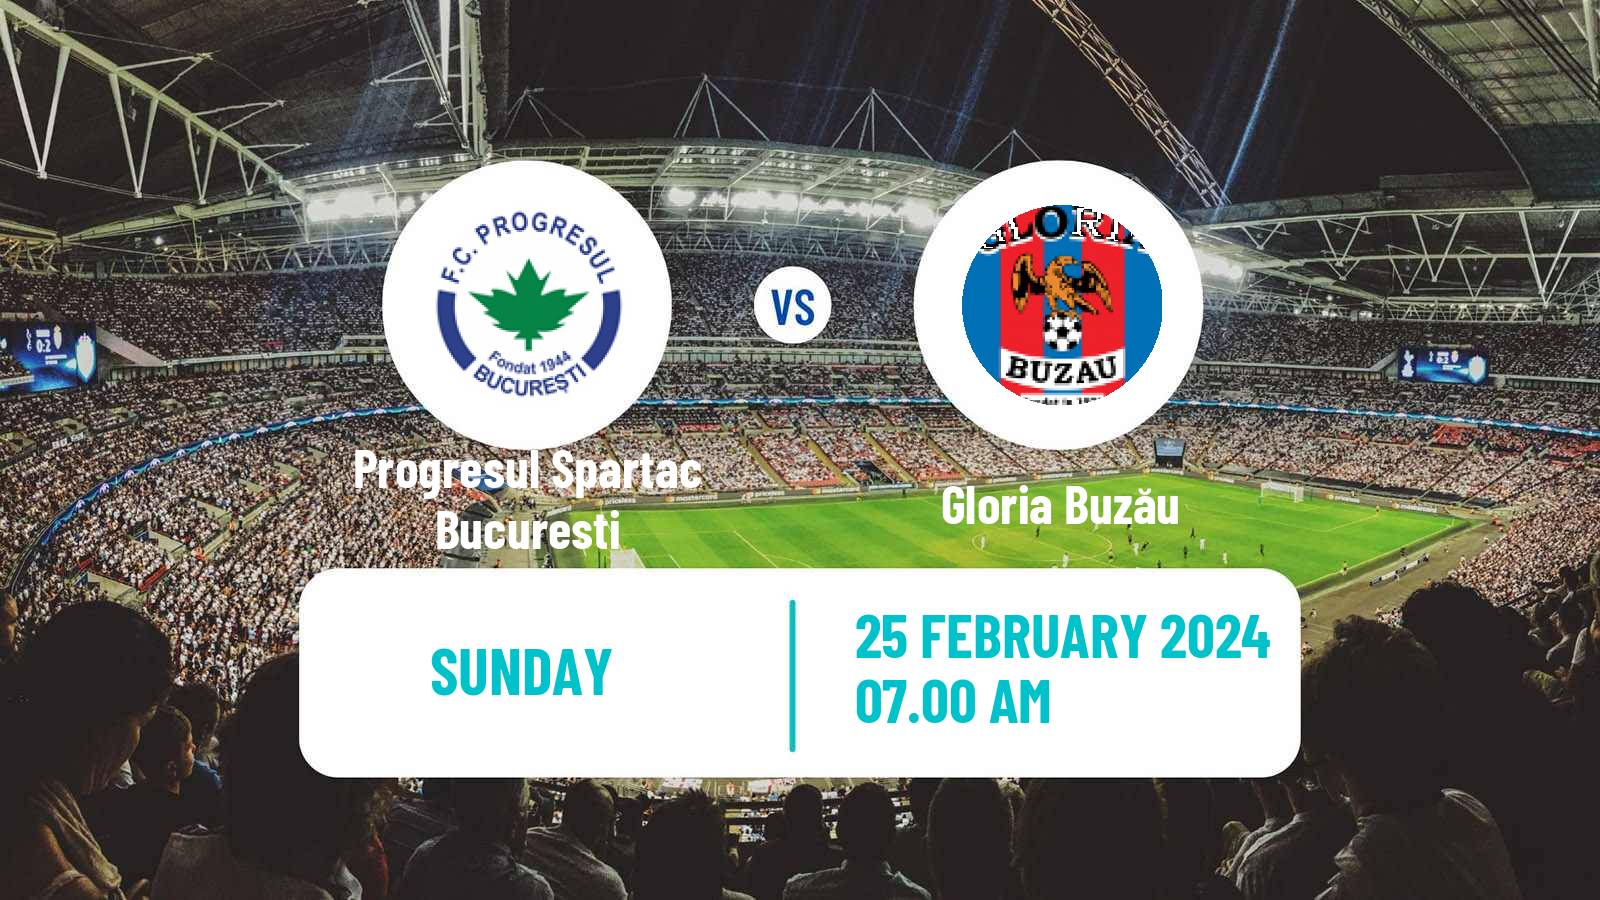 Soccer Romanian Division 2 Progresul Spartac Bucuresti - Gloria Buzău